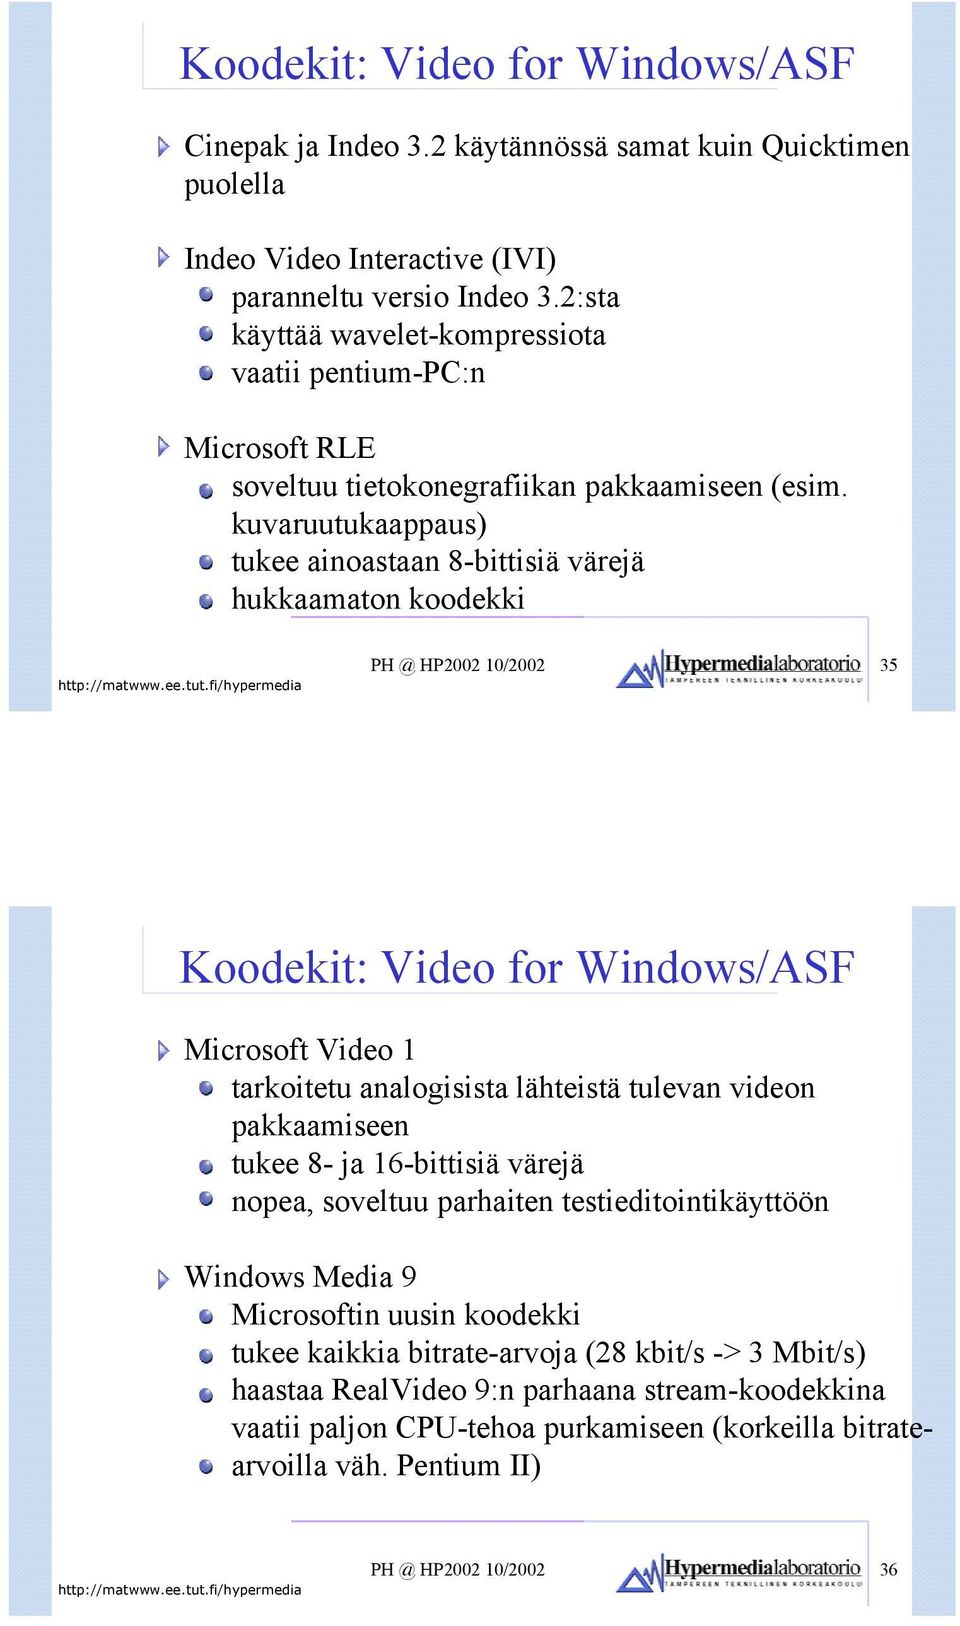 kuvaruutukaappaus) tukee ainoastaan 8-bittisiä värejä hukkaamaton koodekki PH @ HP2002 10/2002 35 Koodekit: Video for Windows/ASF Microsoft Video 1 tarkoitetu analogisista lähteistä tulevan videon